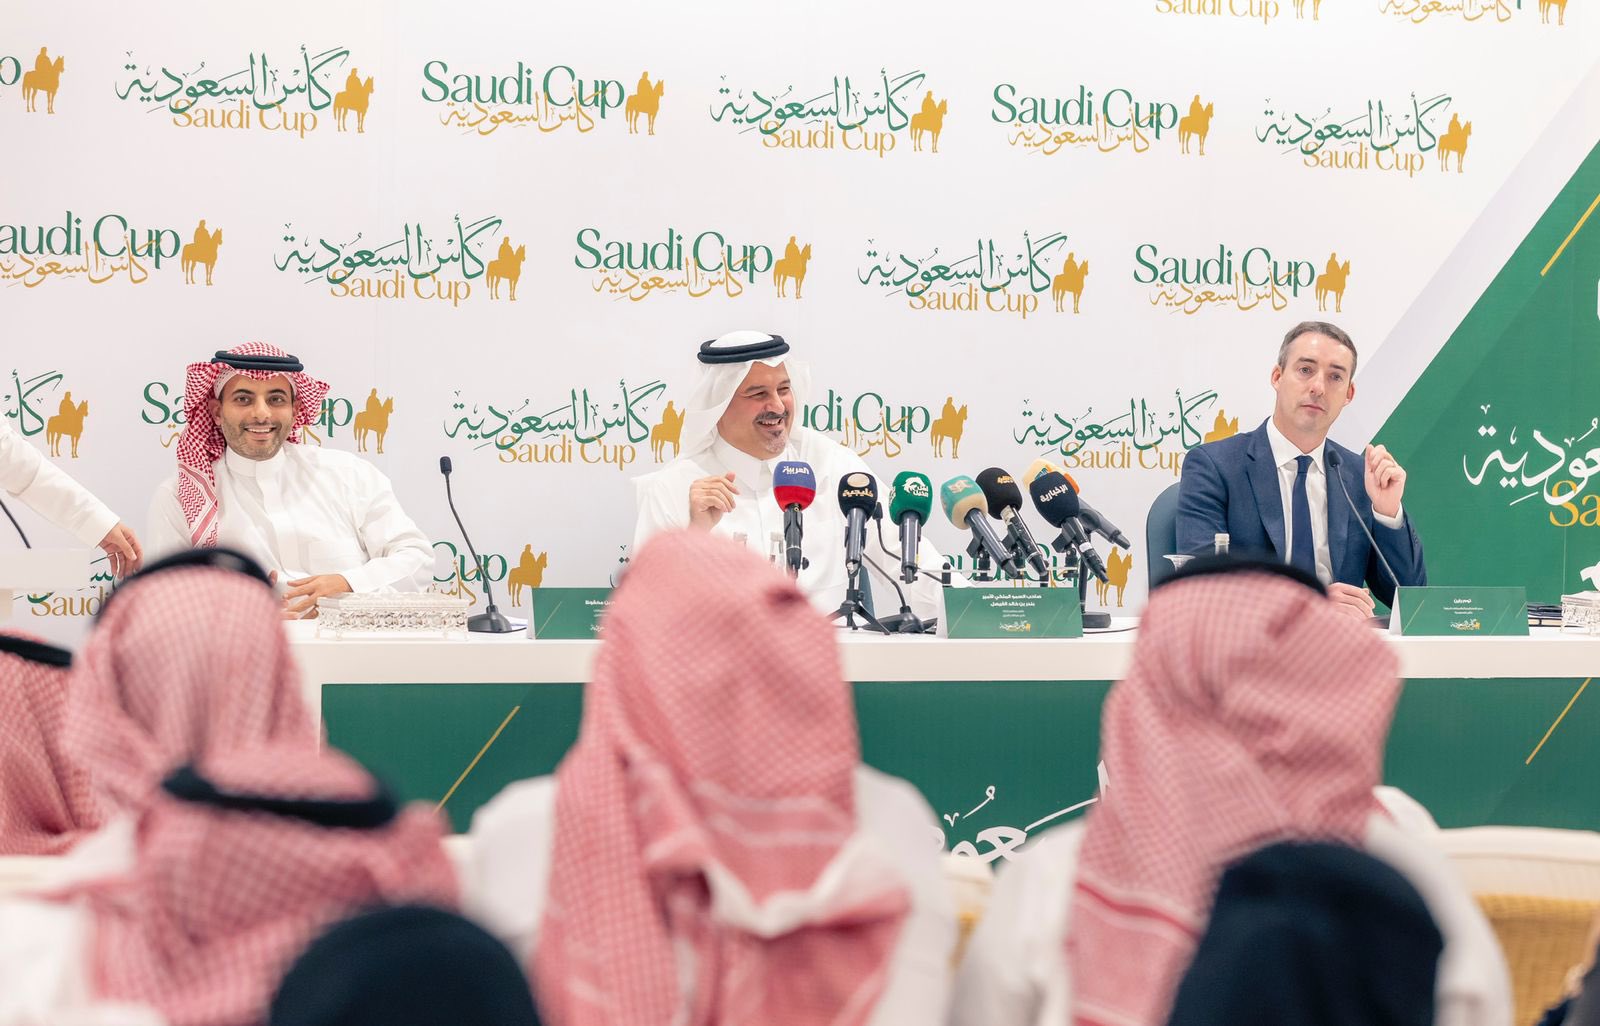 بندر الفيصل: كأس السعودية مهتم بالمواهب المحلية